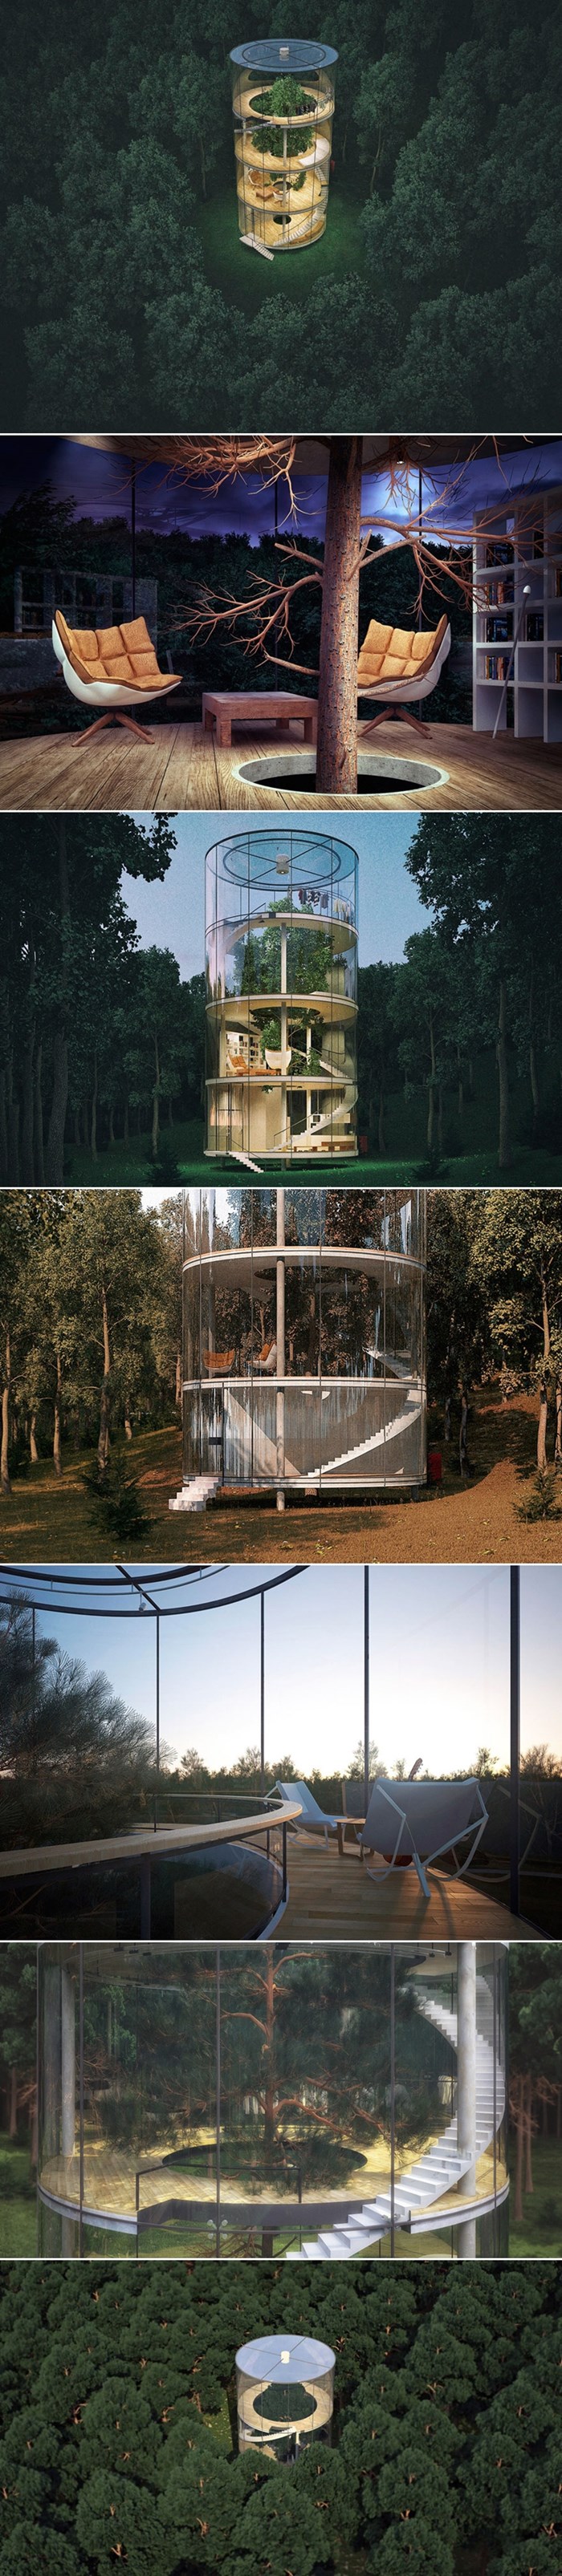 Biste li živjeli u kući izgrađenoj oko stabla?